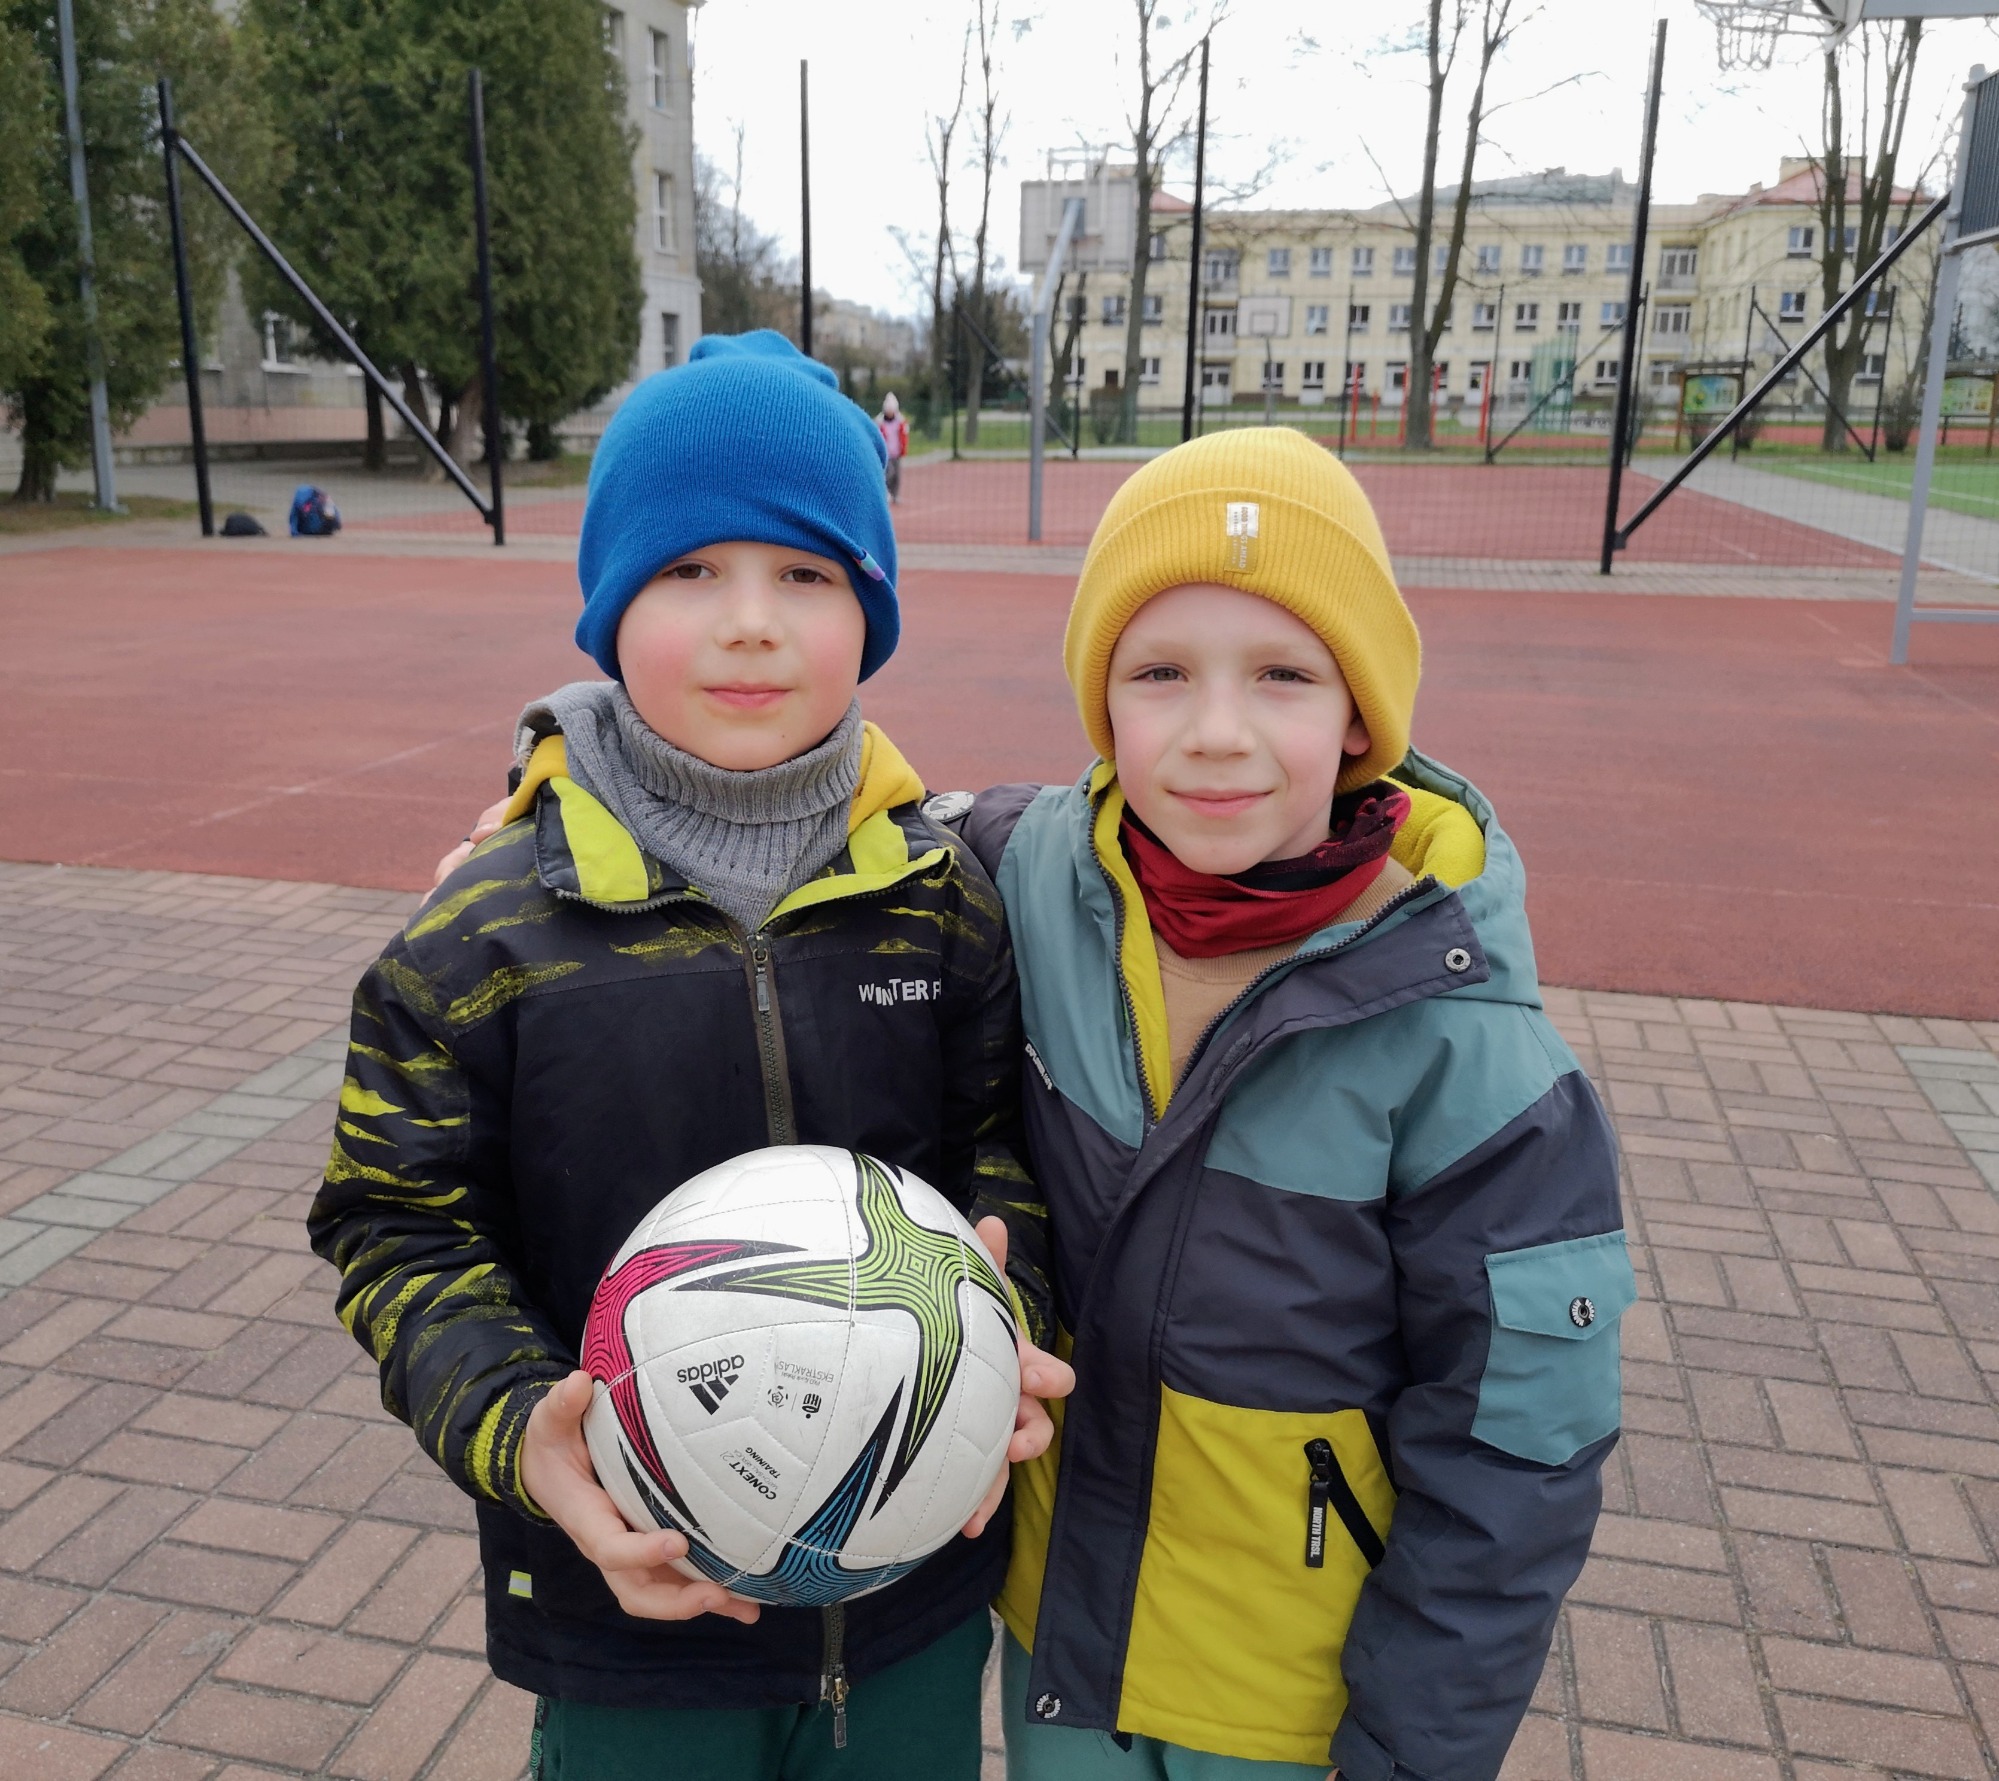 Chłopcy trzymający piłkę.